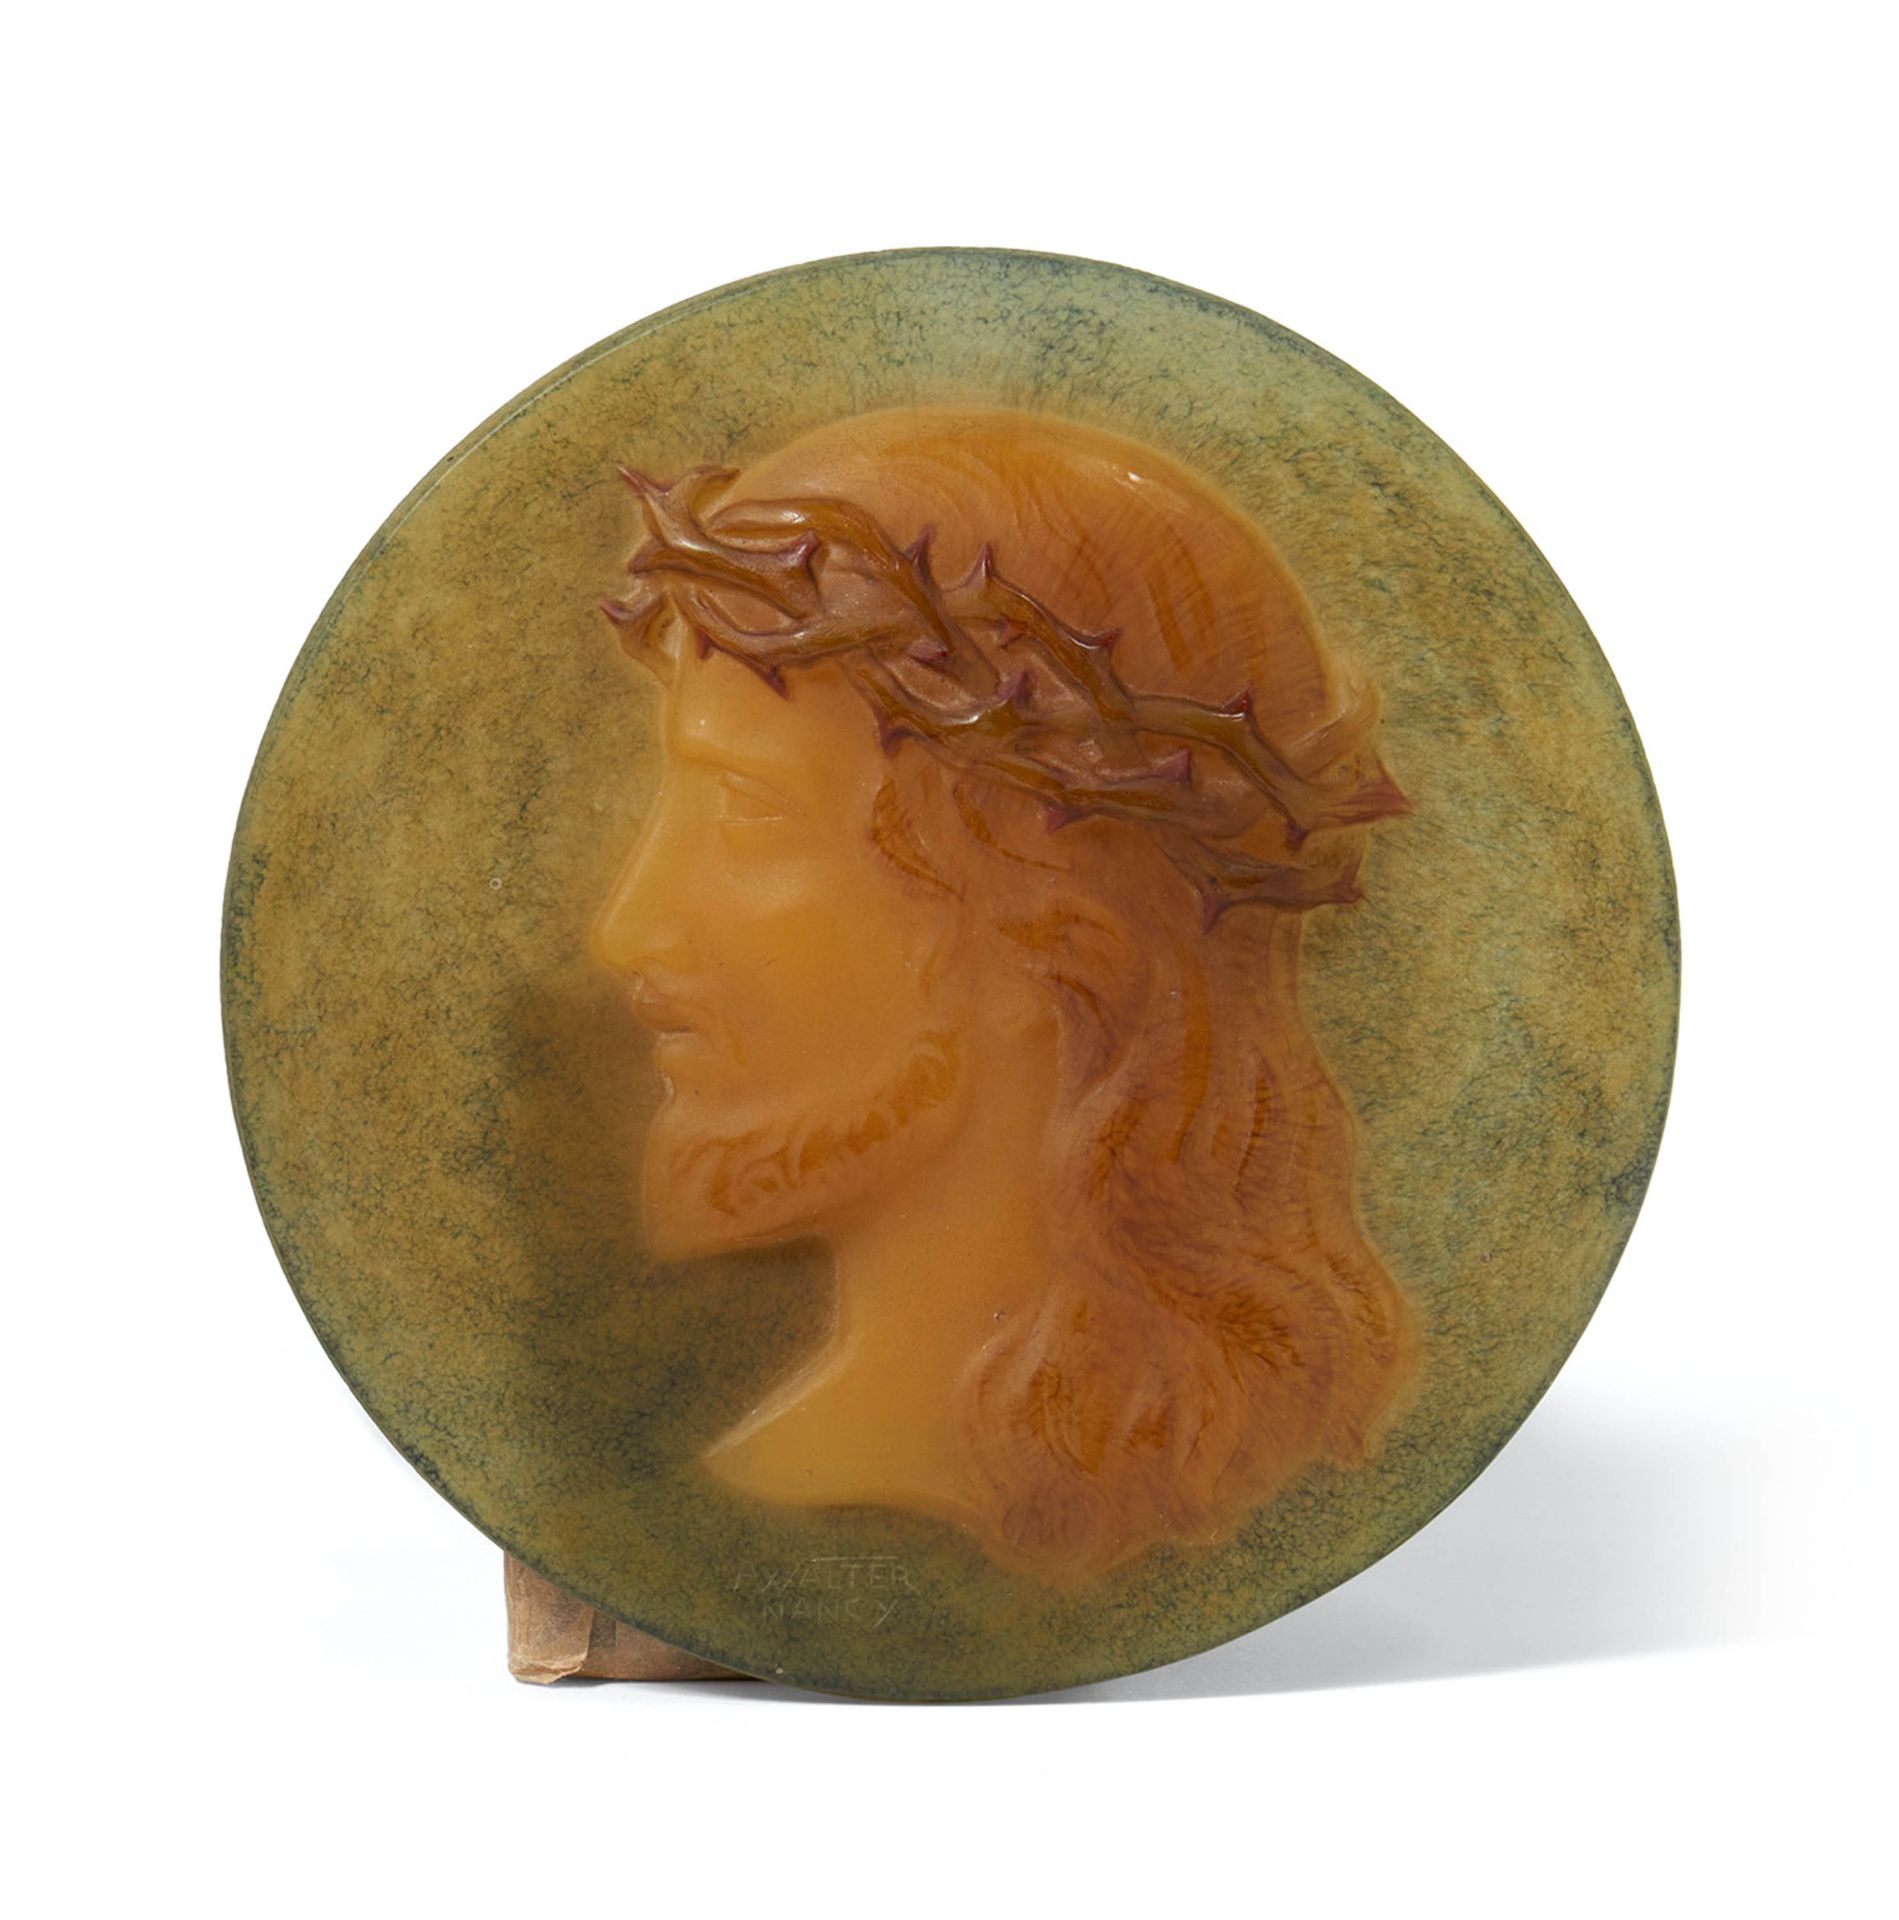 Large Pâte de verre plaque with the profile of Christ